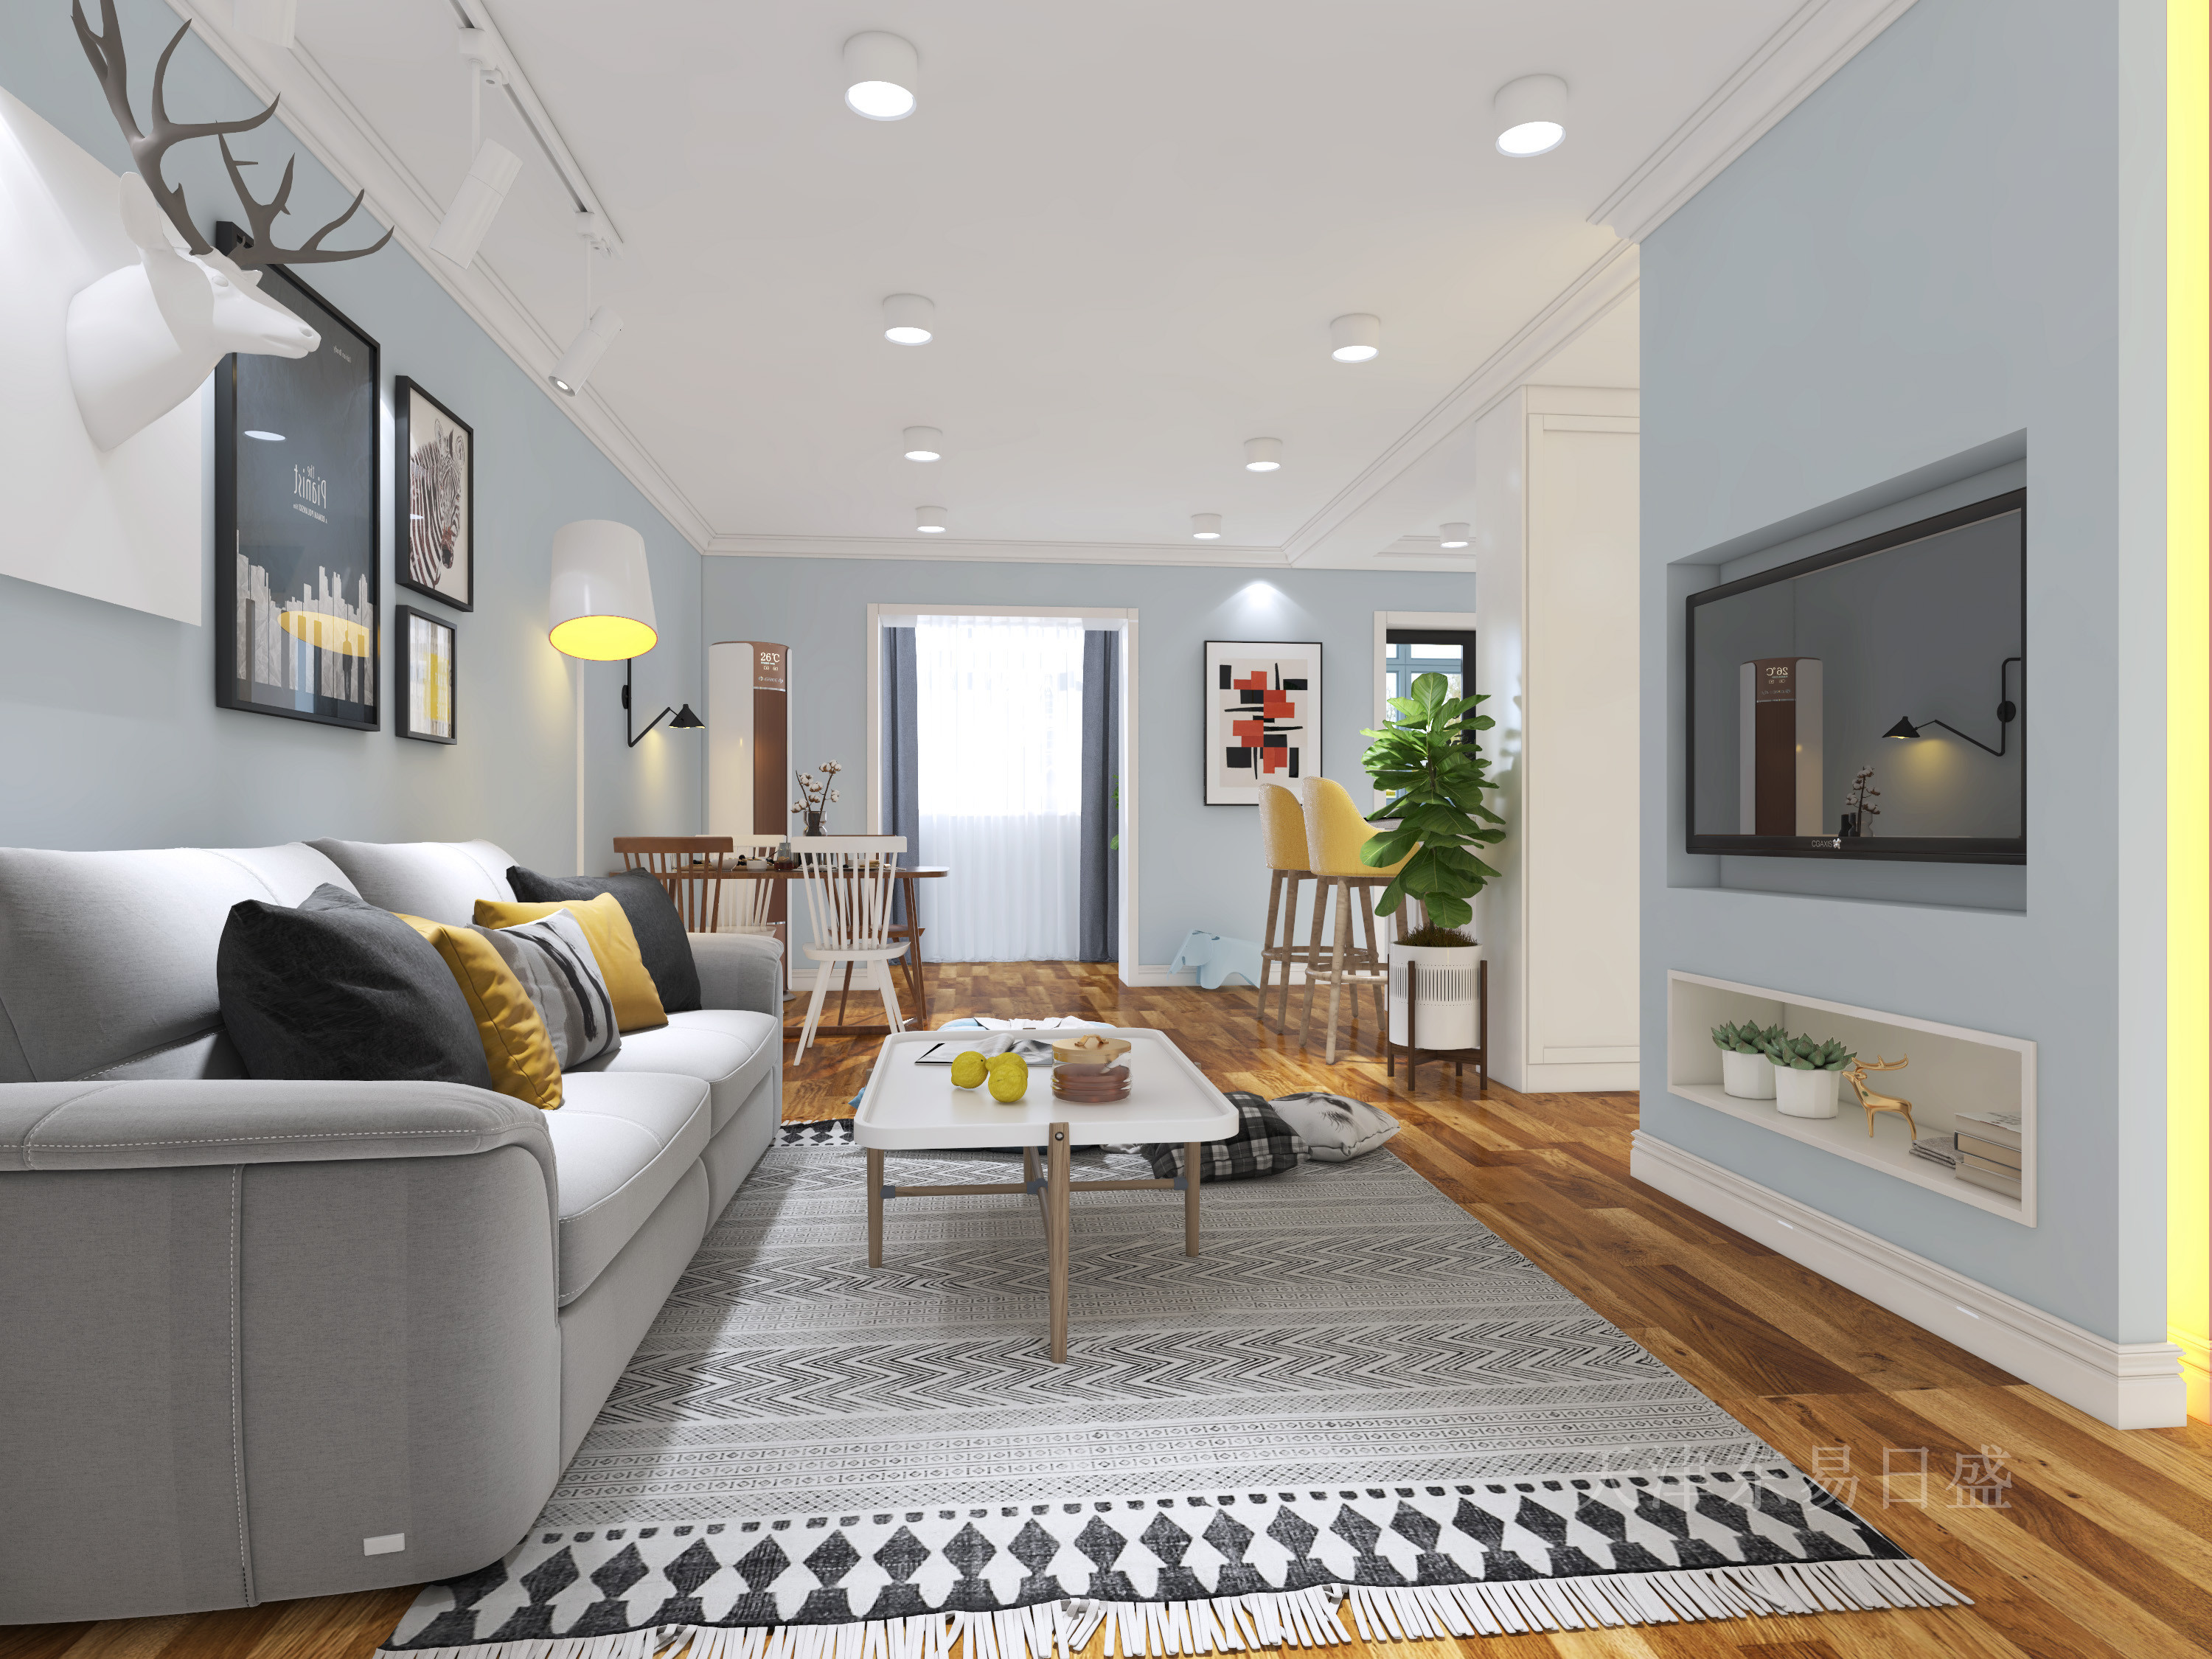 105平米冠华公寓北欧风格装修效果图丰富动人的空间效果